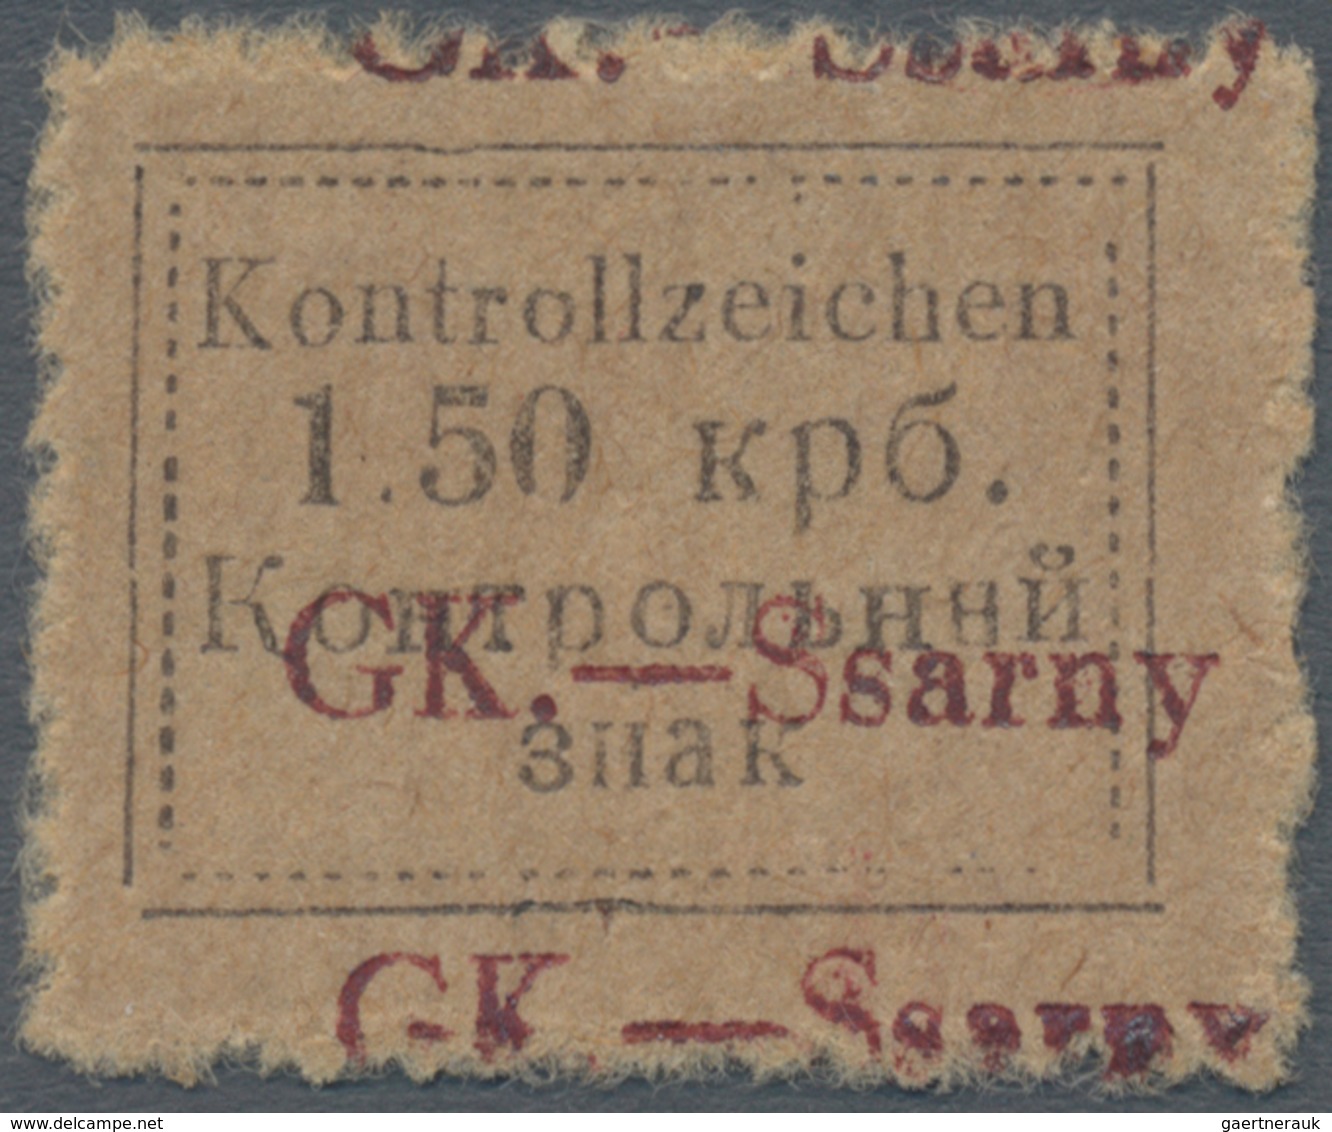 Dt. Besetzung II WK - Ukraine - Sarny: 1941. Kontrollzeichen 1.50 Krb "GK.-Ssarny" Mit Doppeltem Auf - Occupation 1938-45